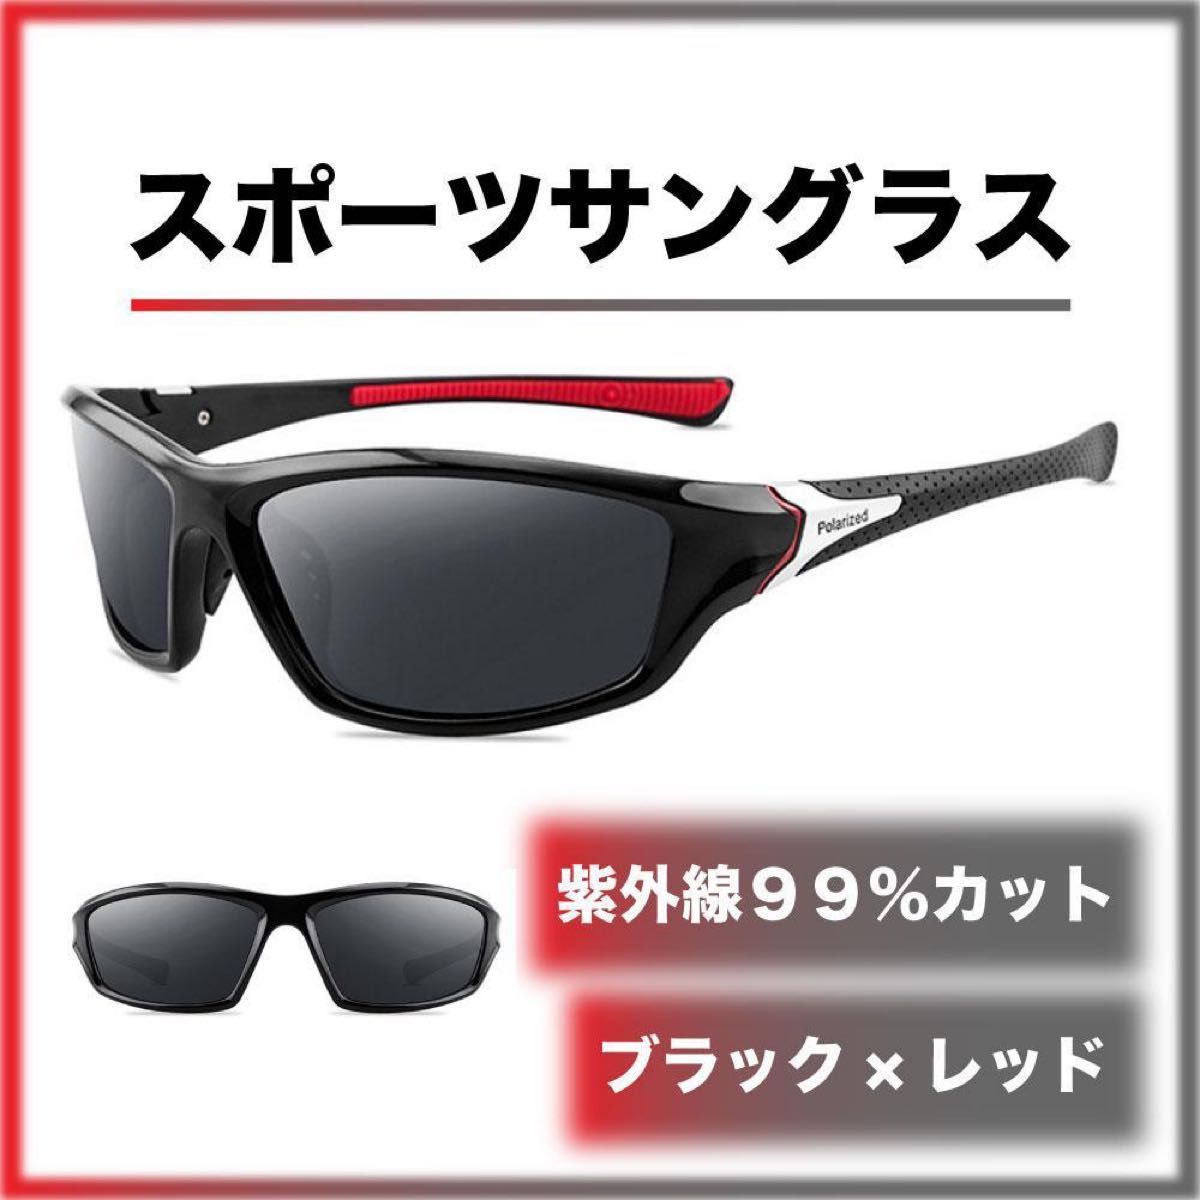 ☆新品☆ スポーツサングラス ブラック×レッド 偏光 UVカット 軽量 釣り サイクリング ゴルフ ドライブ